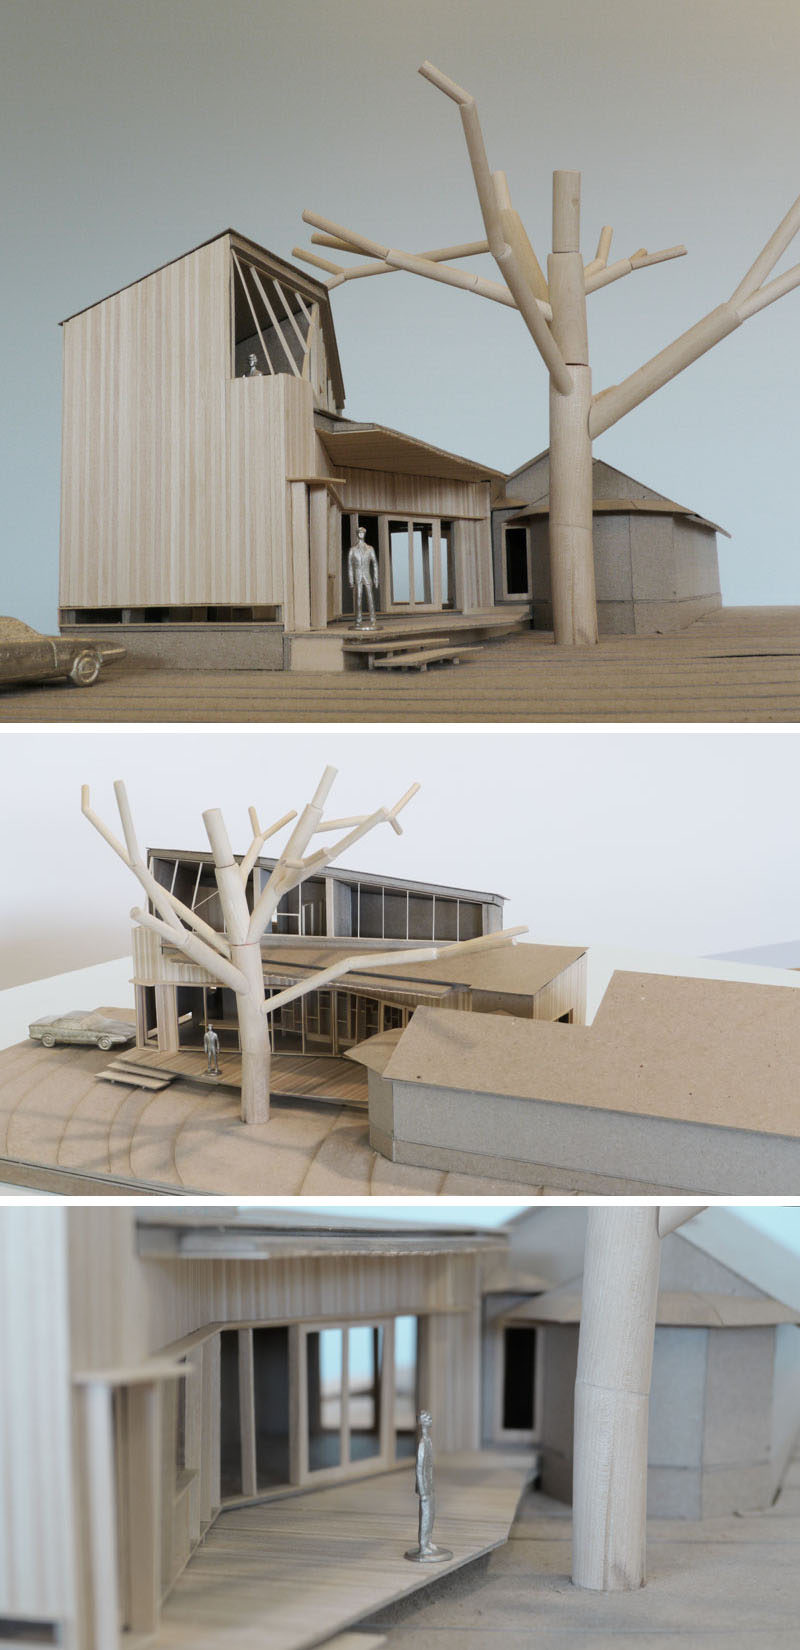  Компания Murray Legge Architecture спроектировала современное дополнение к бунгало 1920-х годов в Центральном Остине, штат Техас, которое окружает существующий 150-летний дуб. # Архитектура # Дополнение # Расширение # Современный дом # Архитектурные модели 